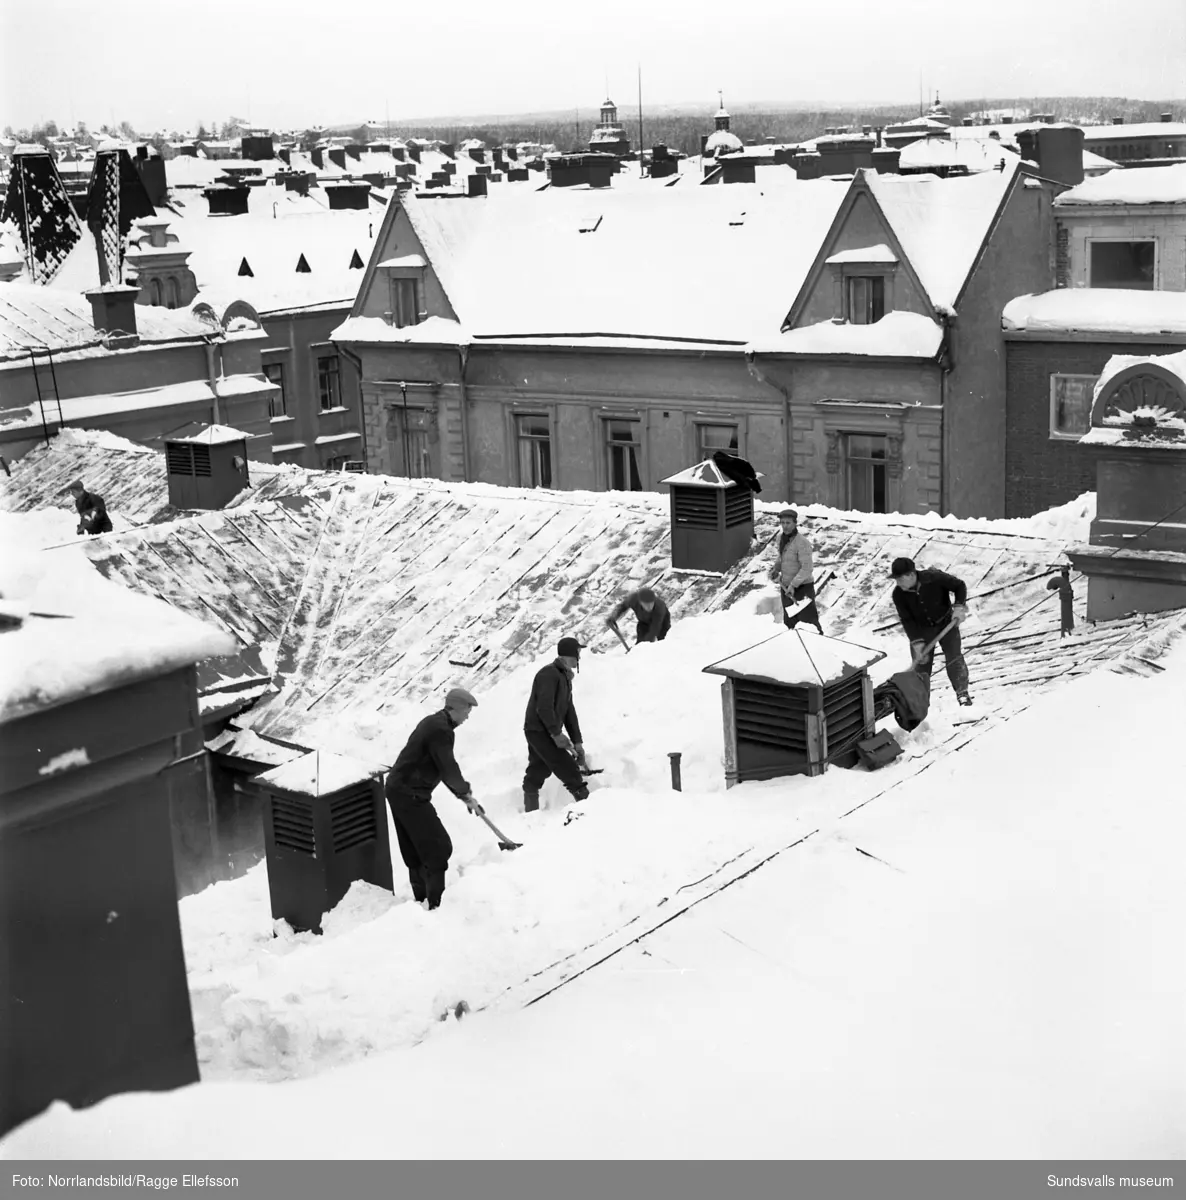 Snöskottning på Stadshusets tak.